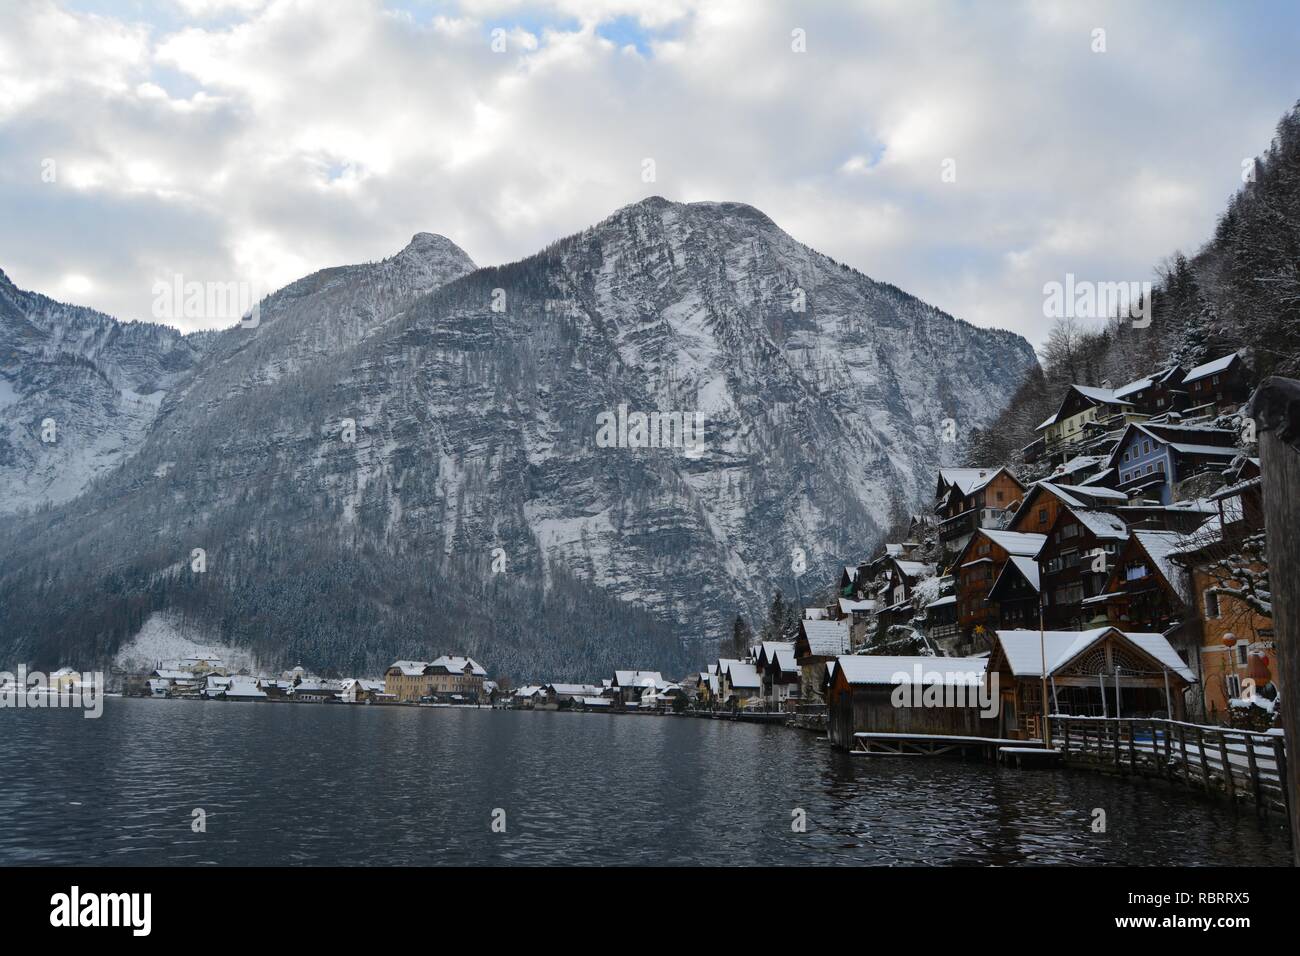 Hallstatt, Austria in inverno. Vista dal lago di Hallstatt e sulle montagne innevate sullo sfondo. Foto Stock